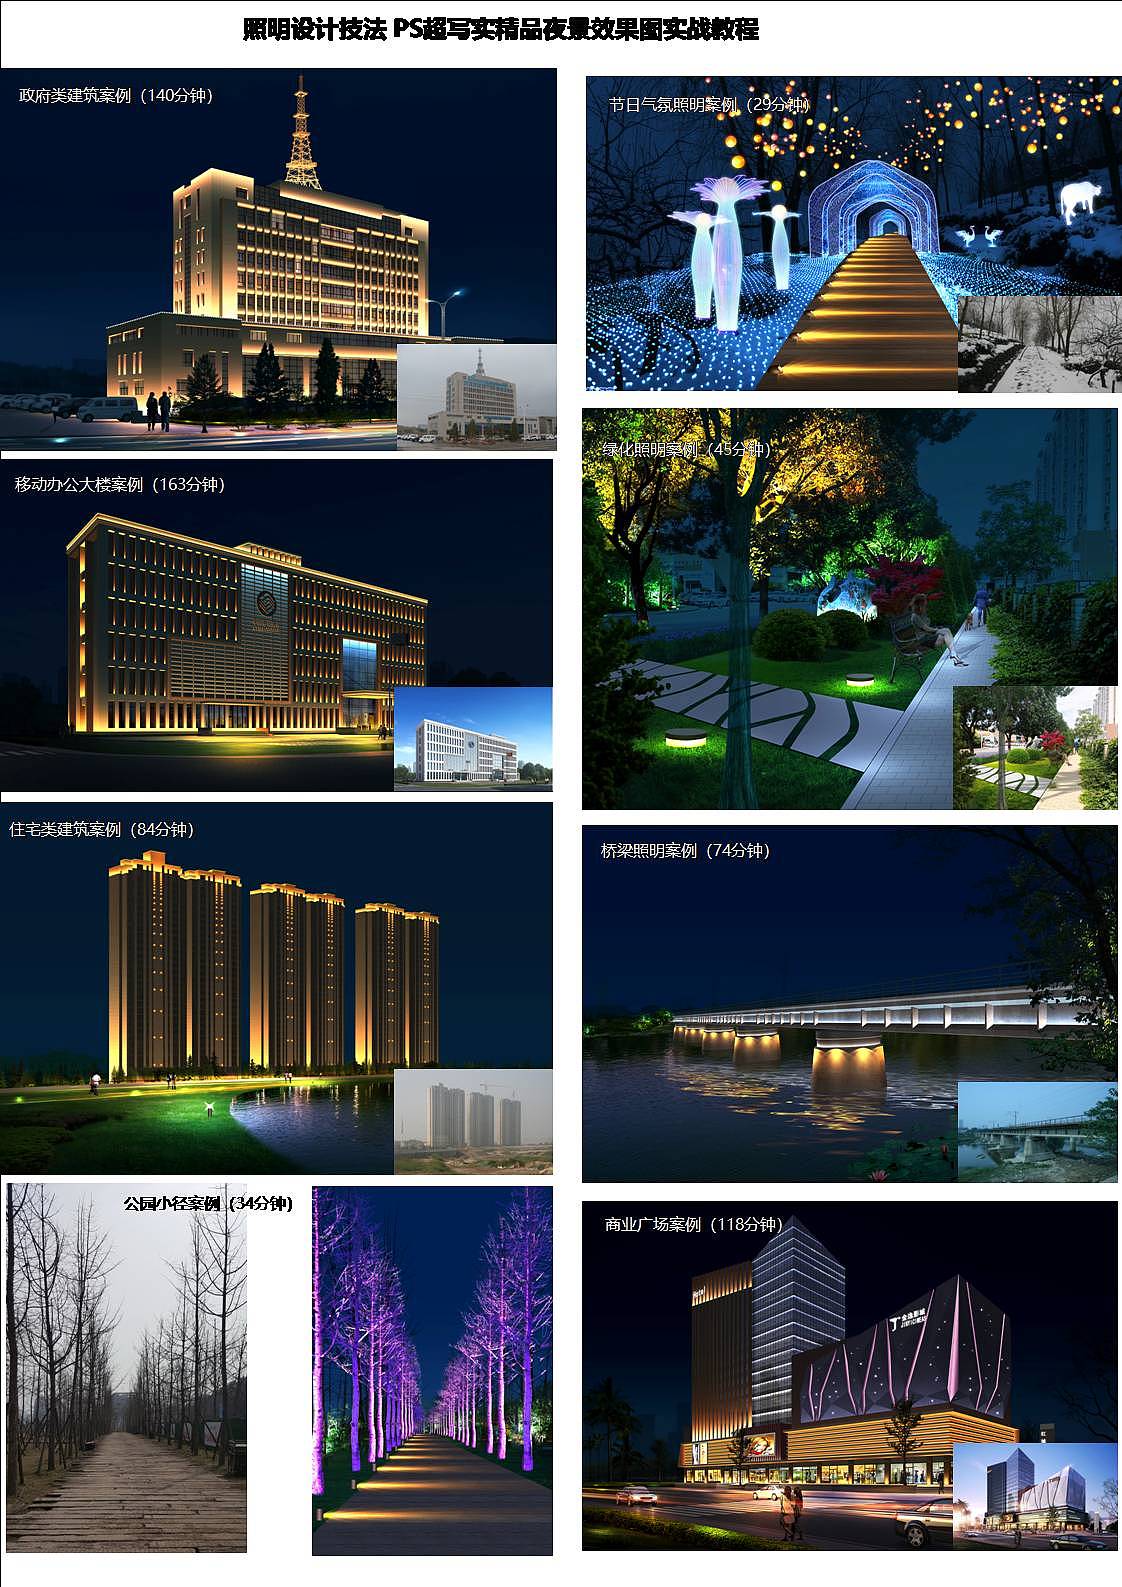 夜景效果，用PS制作浪漫梦幻的城市夜景照片(4) - 风景调色 - PS教程自学网